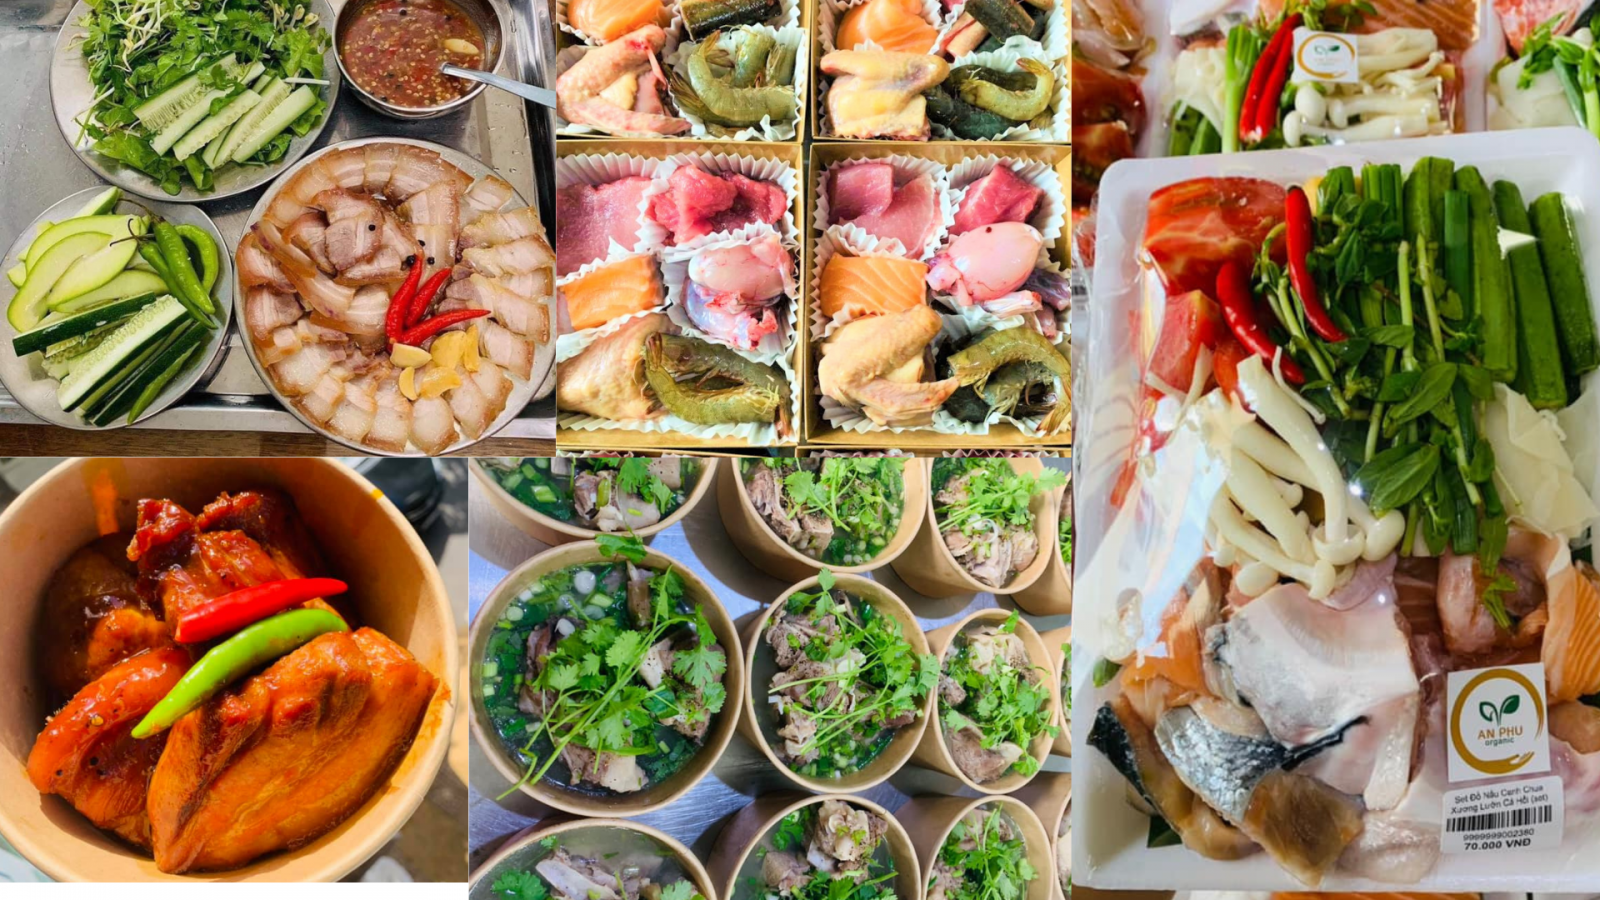 Nhiều món ăn được chế biến sẵn thơm ngon, nhiều set thực phẩm tiện lợi cho việc nấu nướng tại chuỗi cửa hàng thực phẩm hữu cơ An Phú Farm.